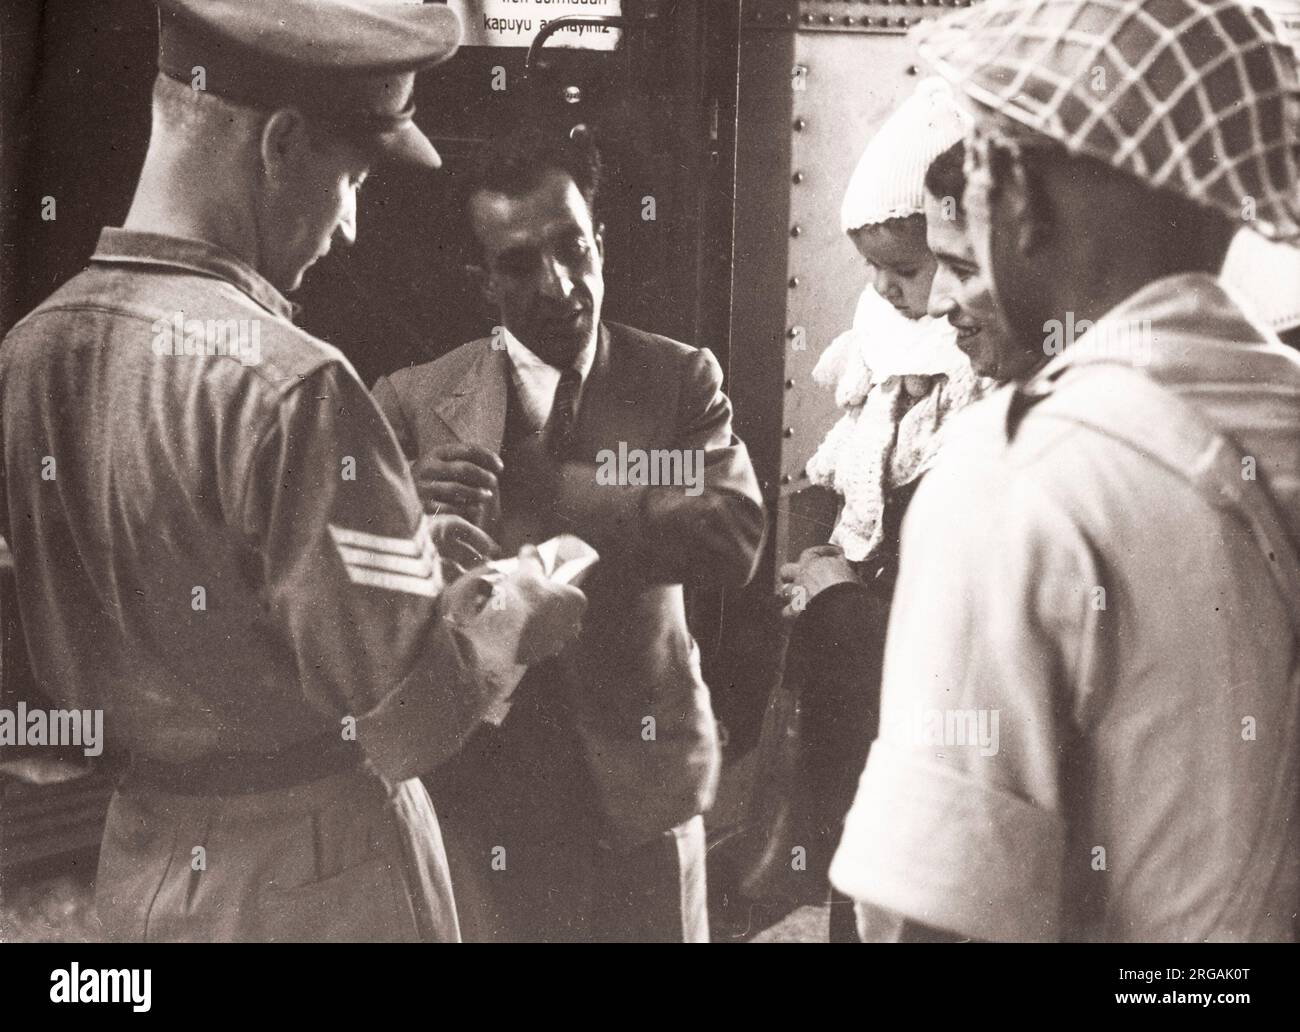 1943 Moyen-Orient Syrie - réfugiés d'Europe sur le train Taurus Express qui a voyagé de Turquie Photographie par un officier de recrutement de l'armée britannique stationnés en Afrique de l'est et au Moyen-Orient pendant la Seconde Guerre mondiale Banque D'Images